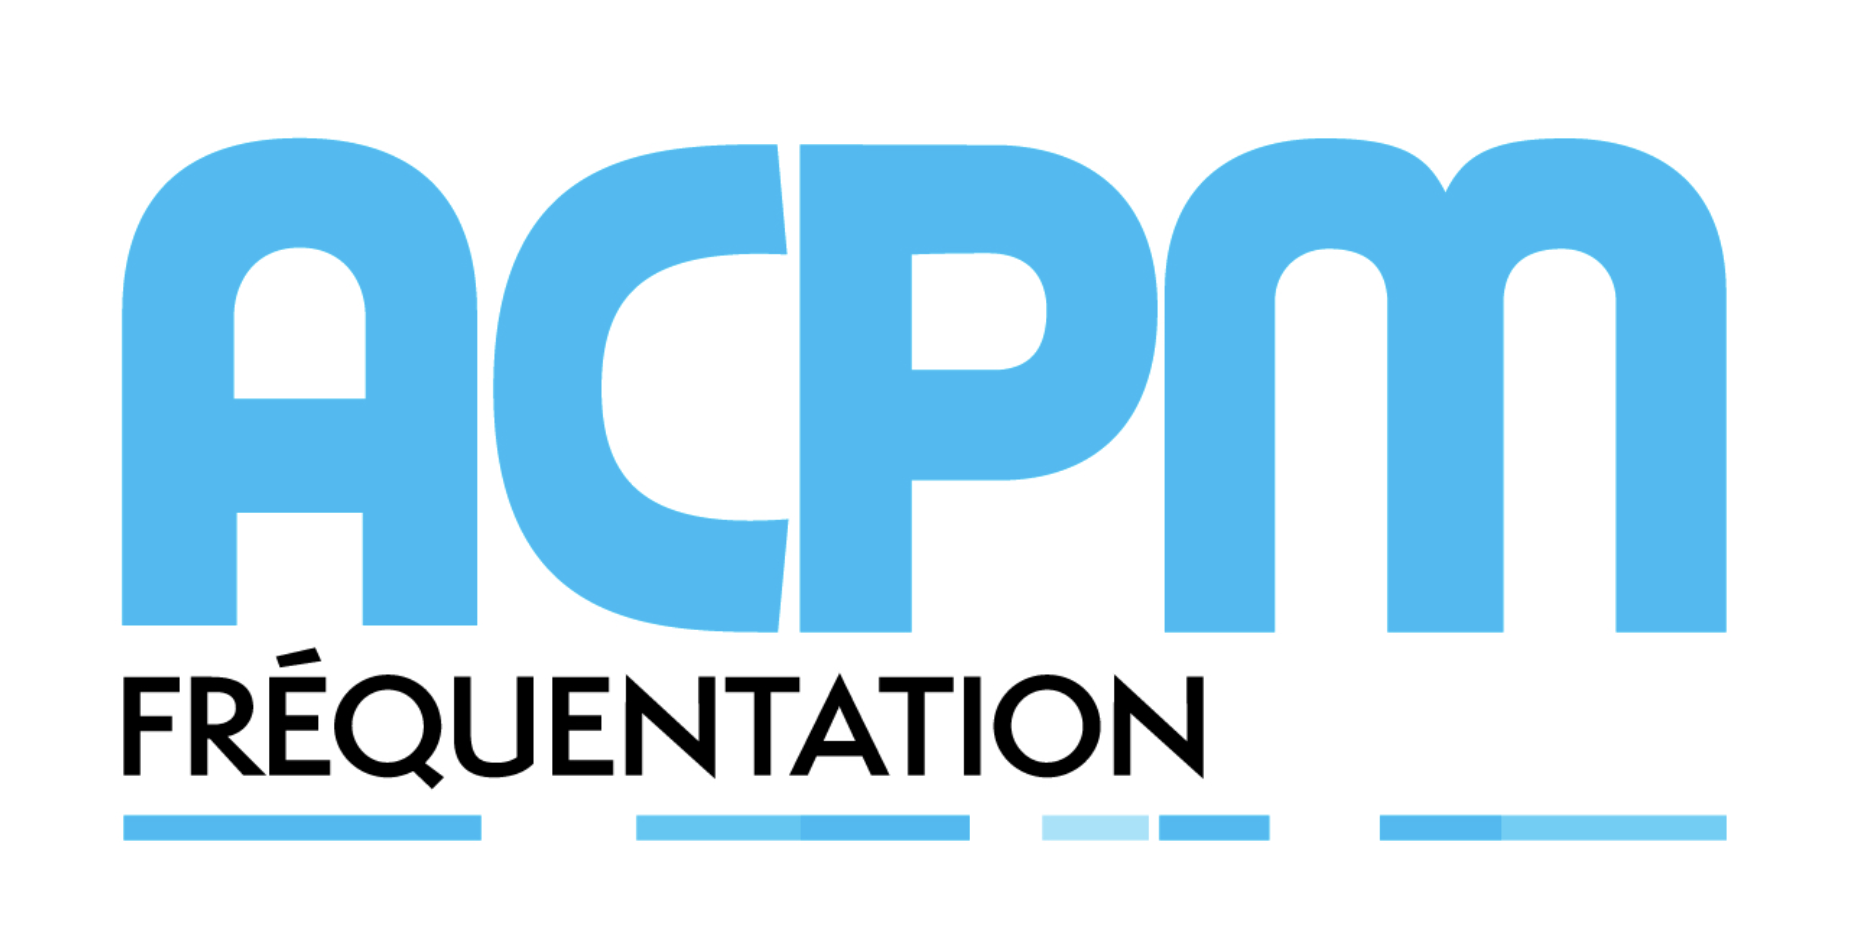 ACPM : la fréquentation des sites et applis